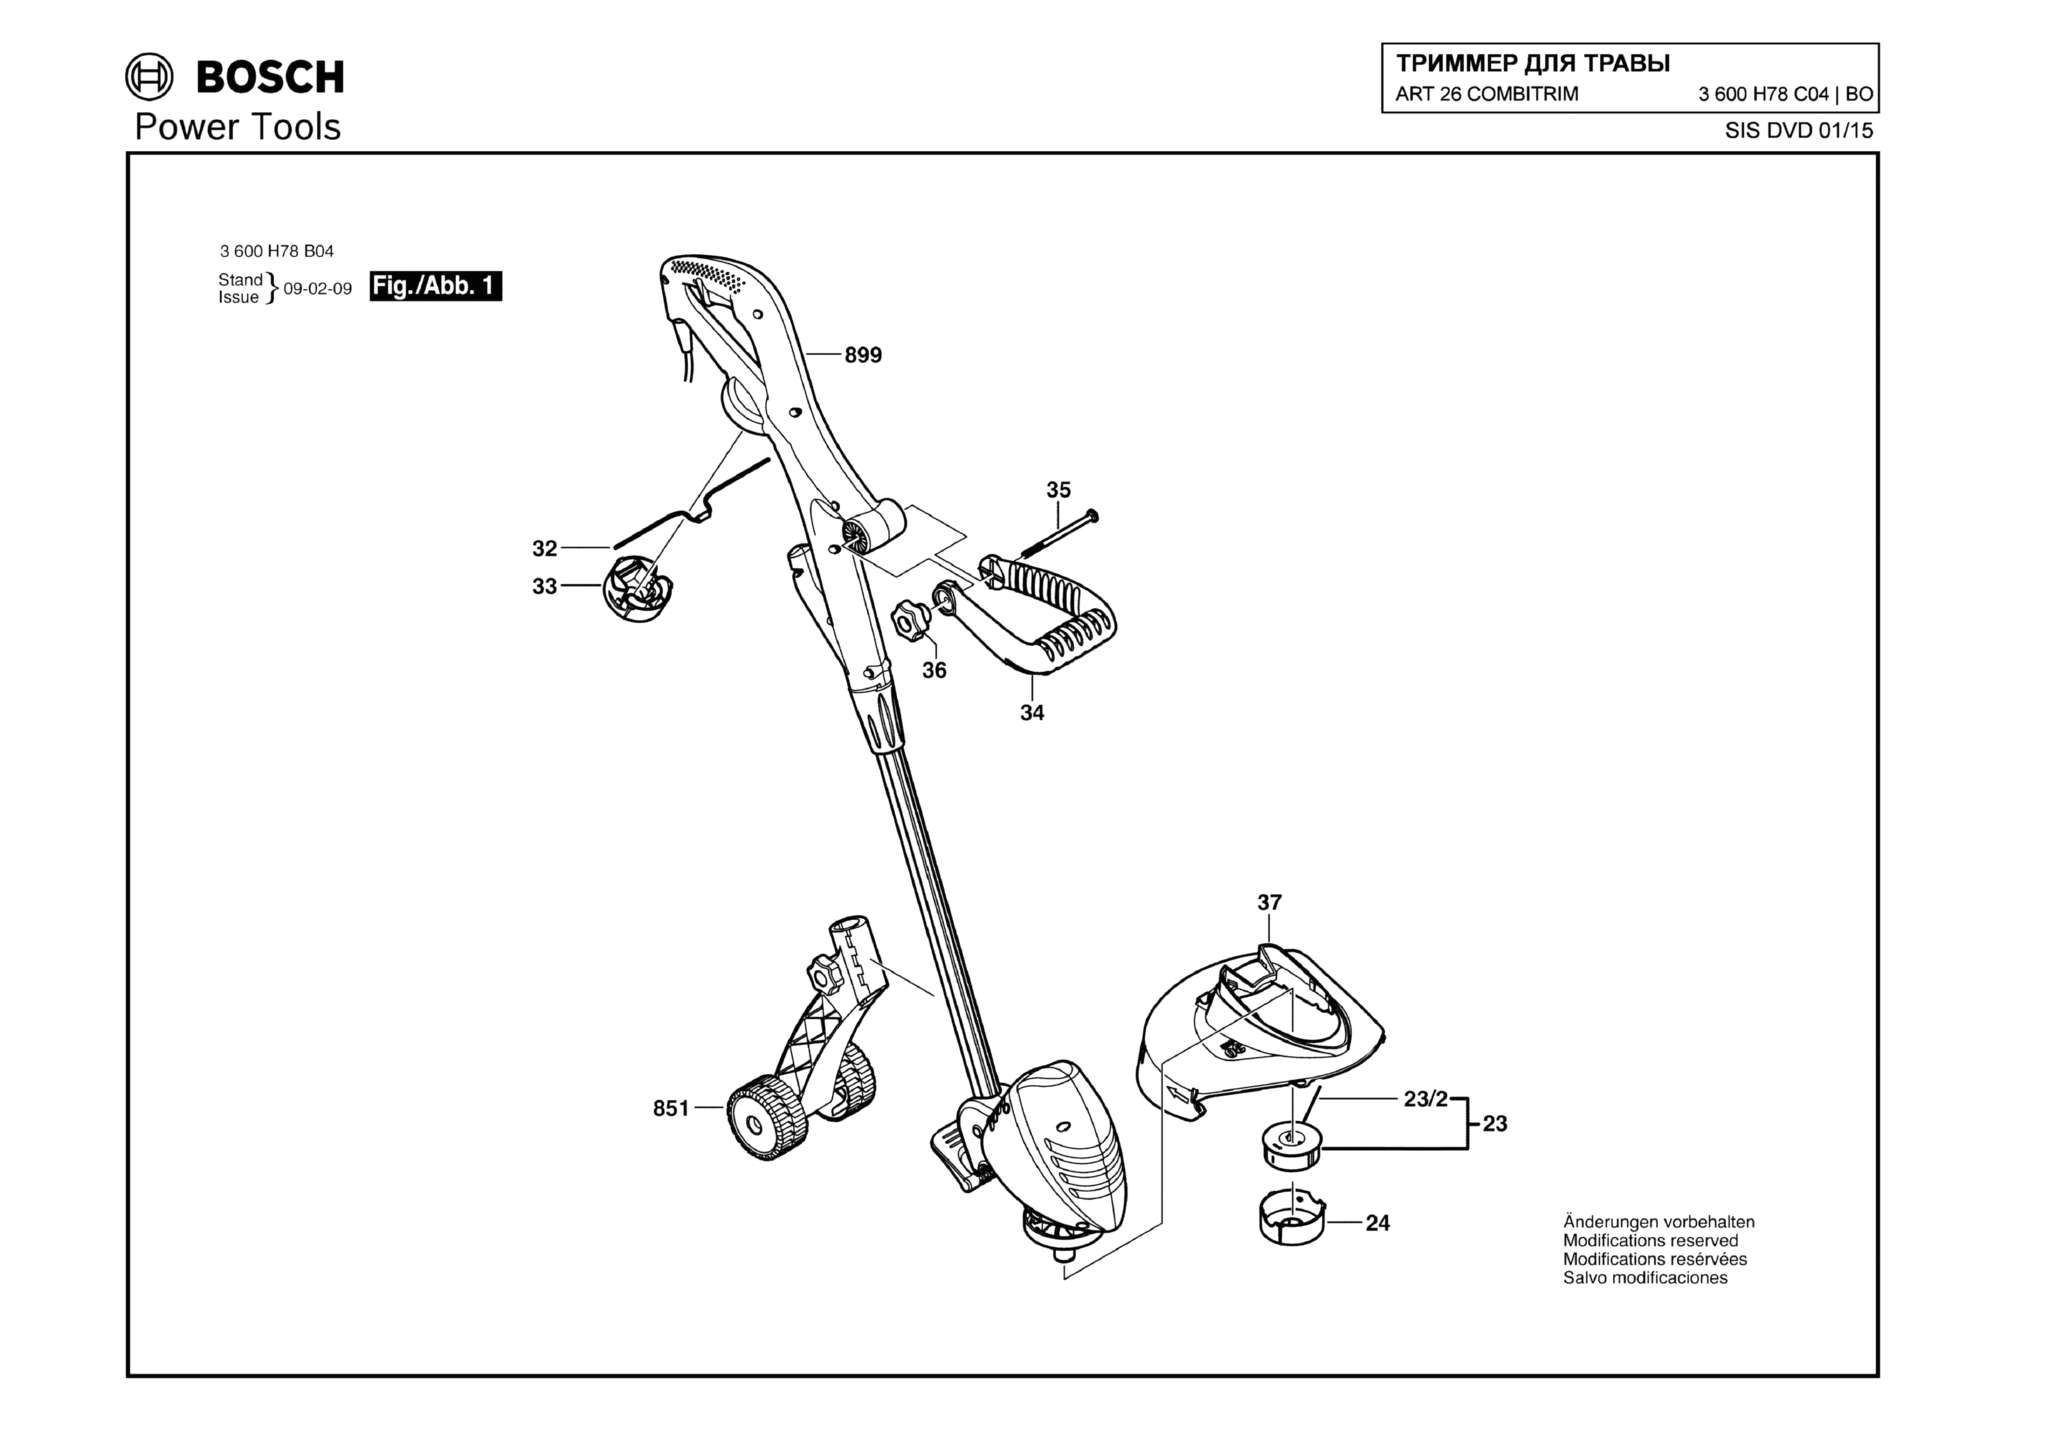 Запчасти, схема и деталировка Bosch ART 26 COMBITRIM (ТИП 3600H78C04)